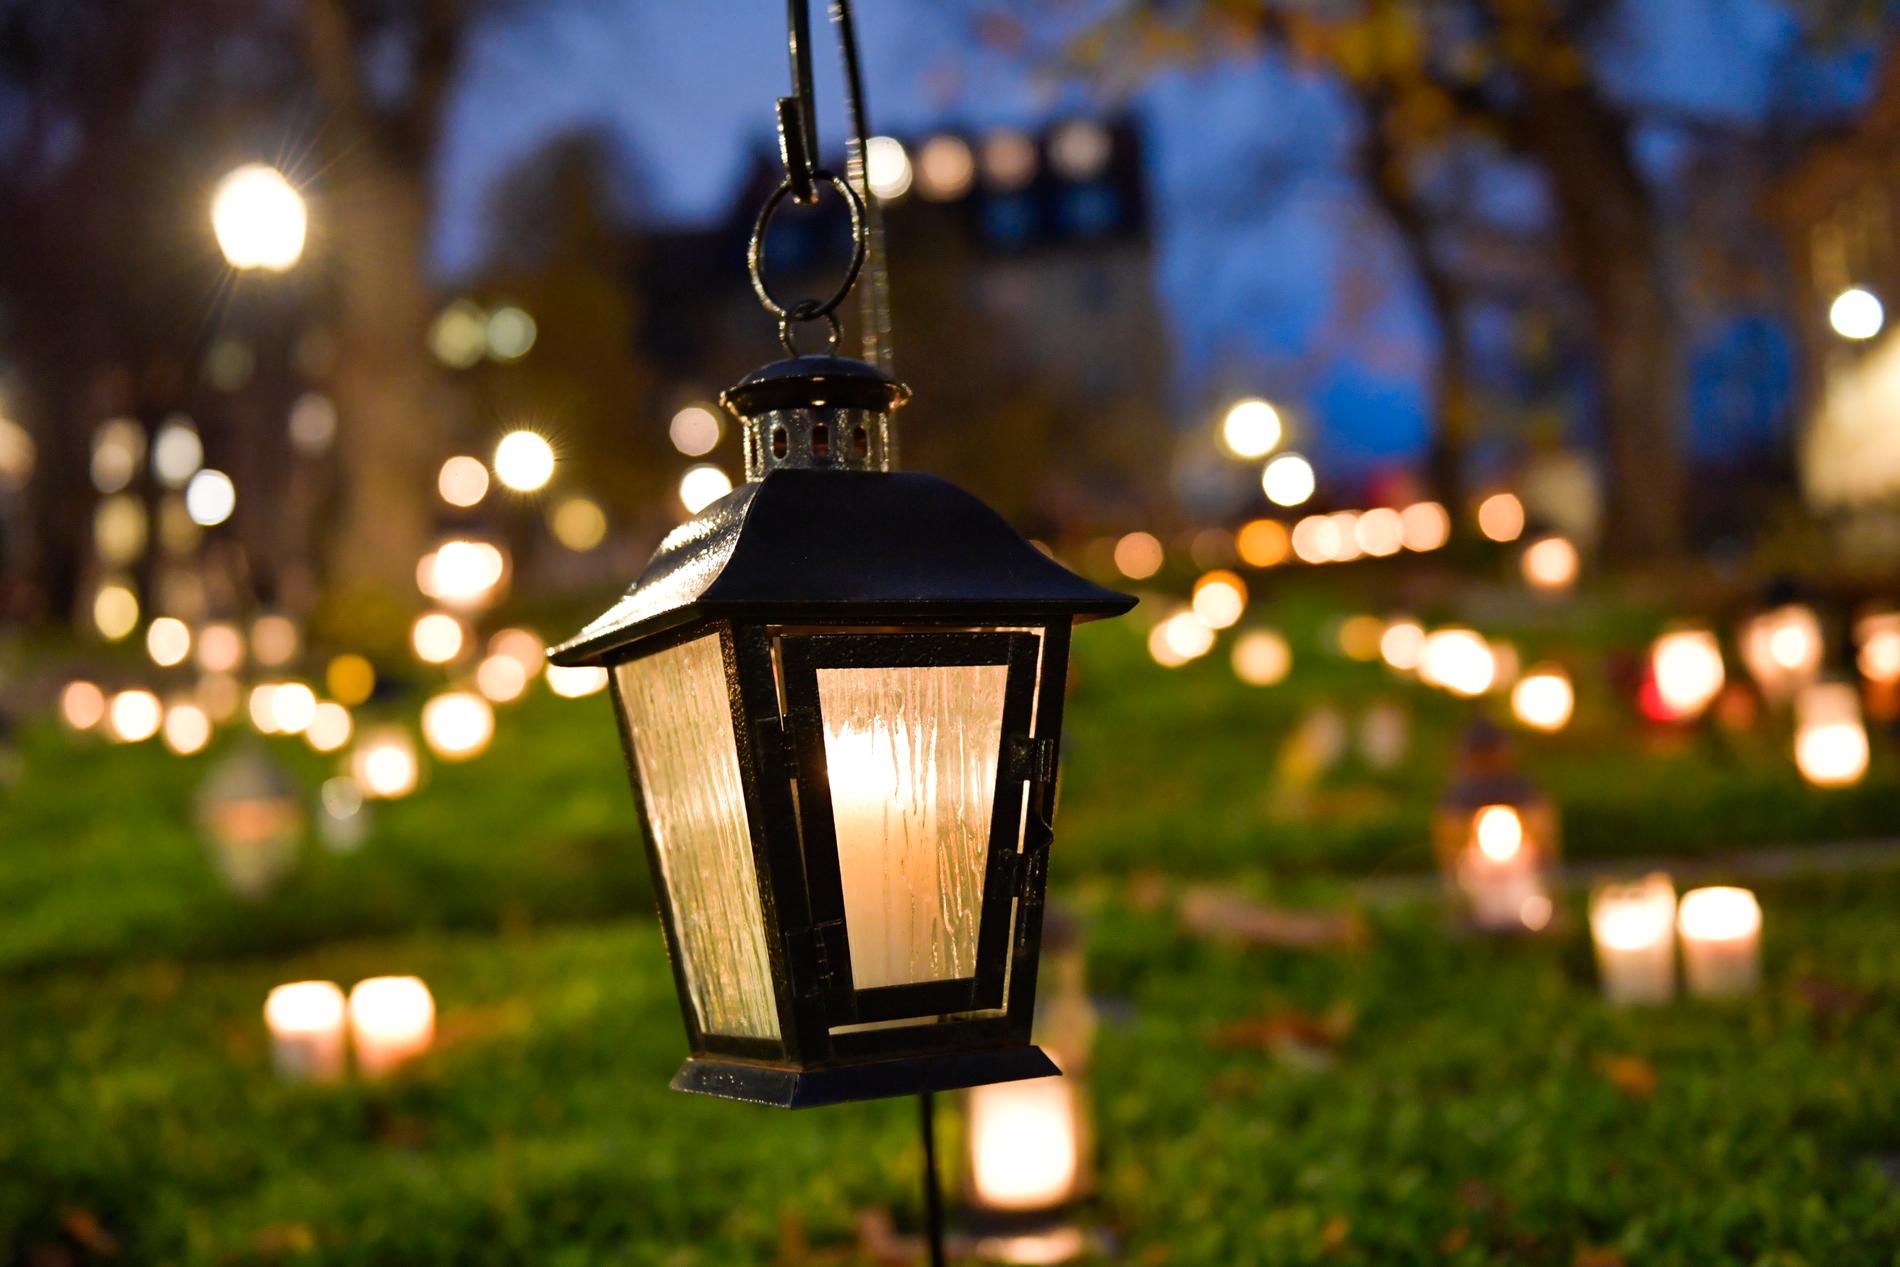 Miljömärkta ljus i återbrukbar ljuslykta är det som Svenska Naturskyddsföreningen rekommenderar.